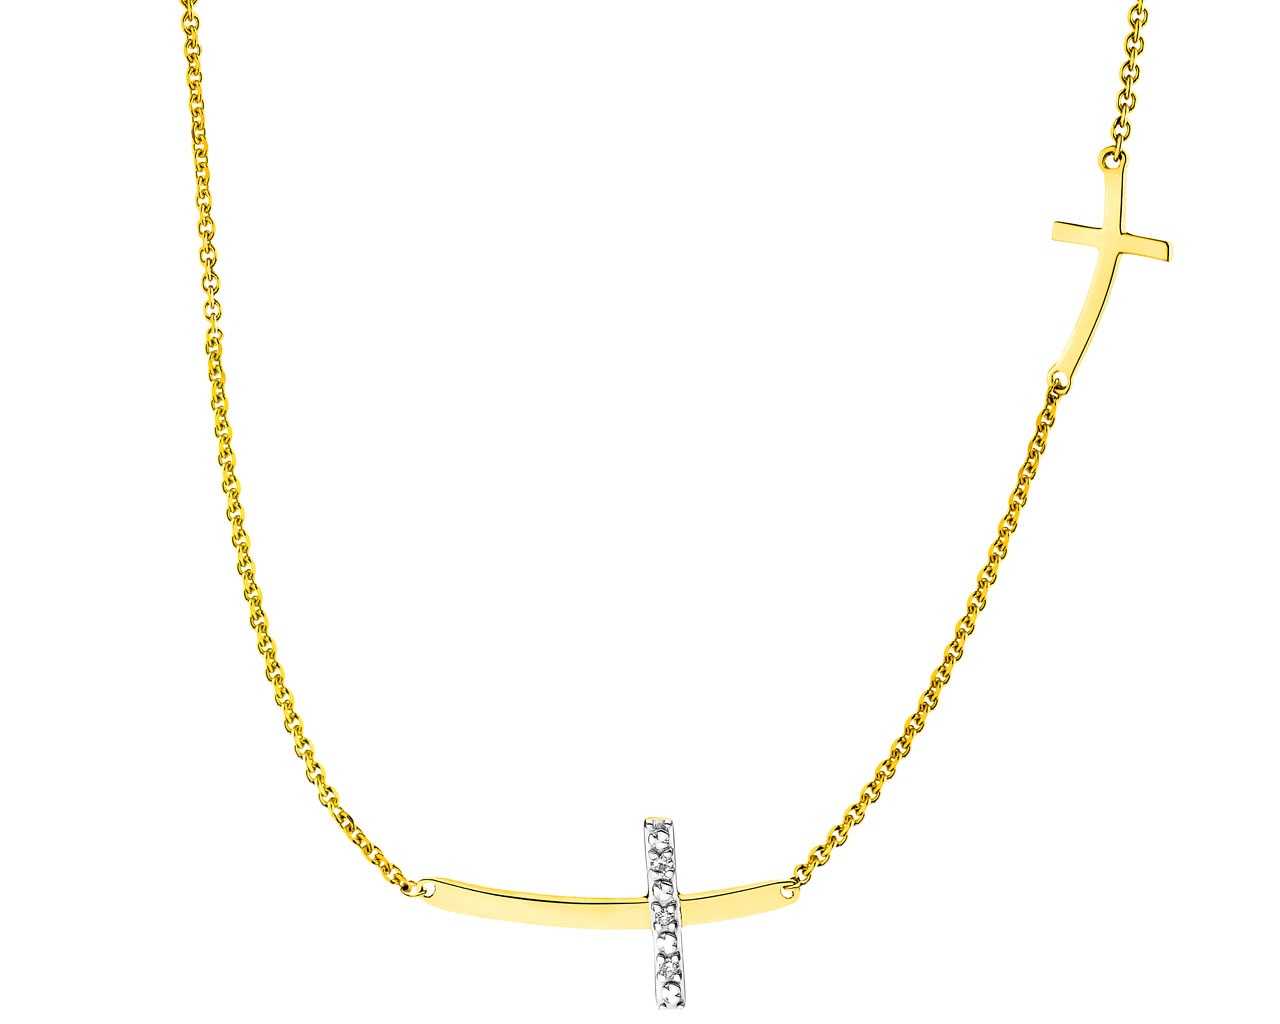 Naszyjnik z żółtego złota z diamentami - krzyże 0,01 ct - próba 585